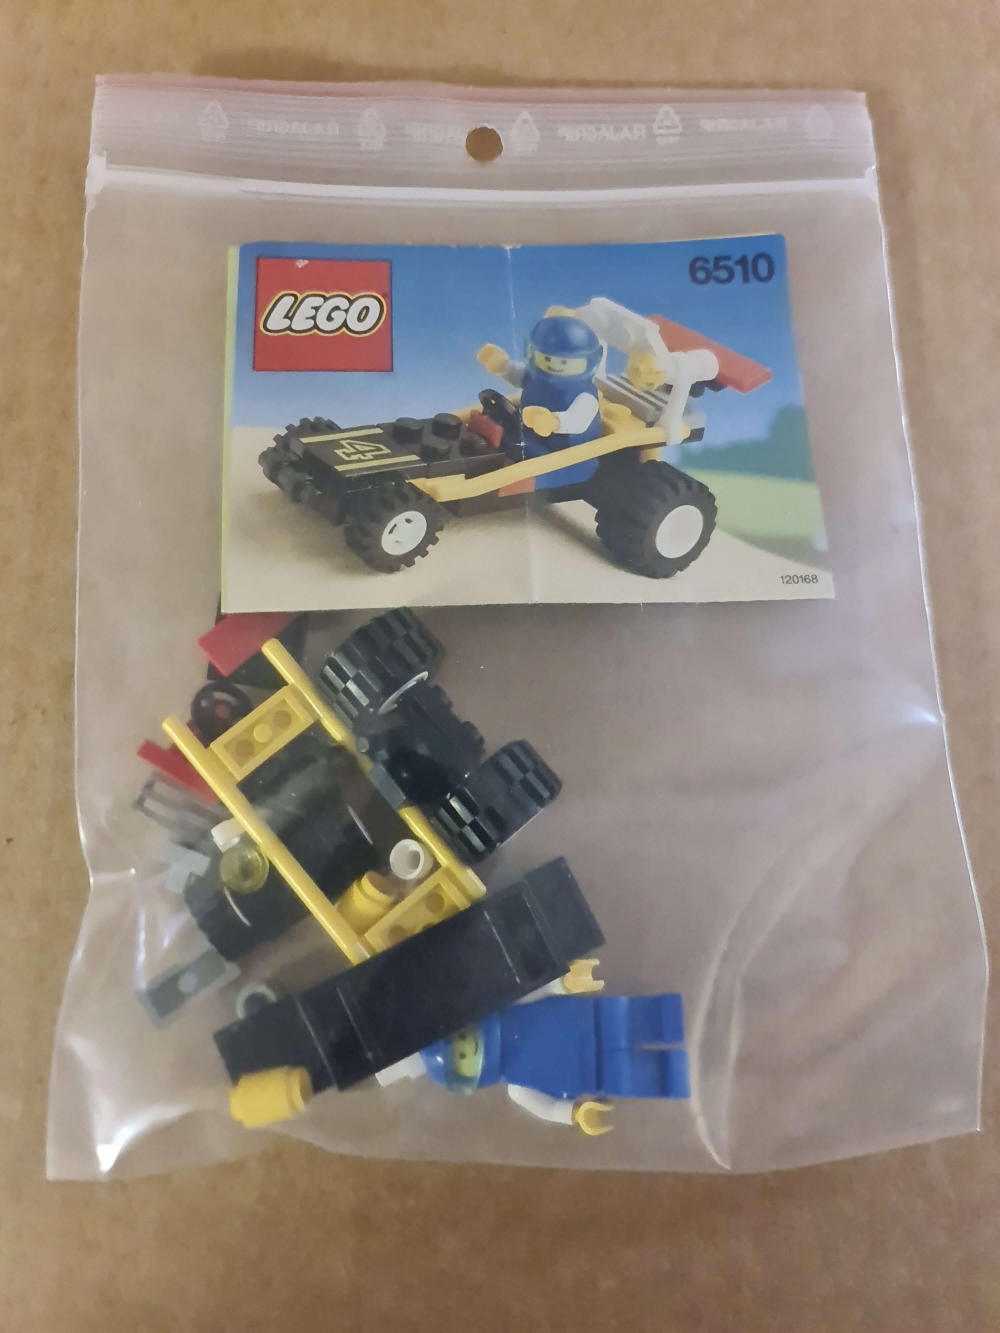 Sett 6510 fra Lego Classic Town serien.
Meget pent. Komplett med manual.